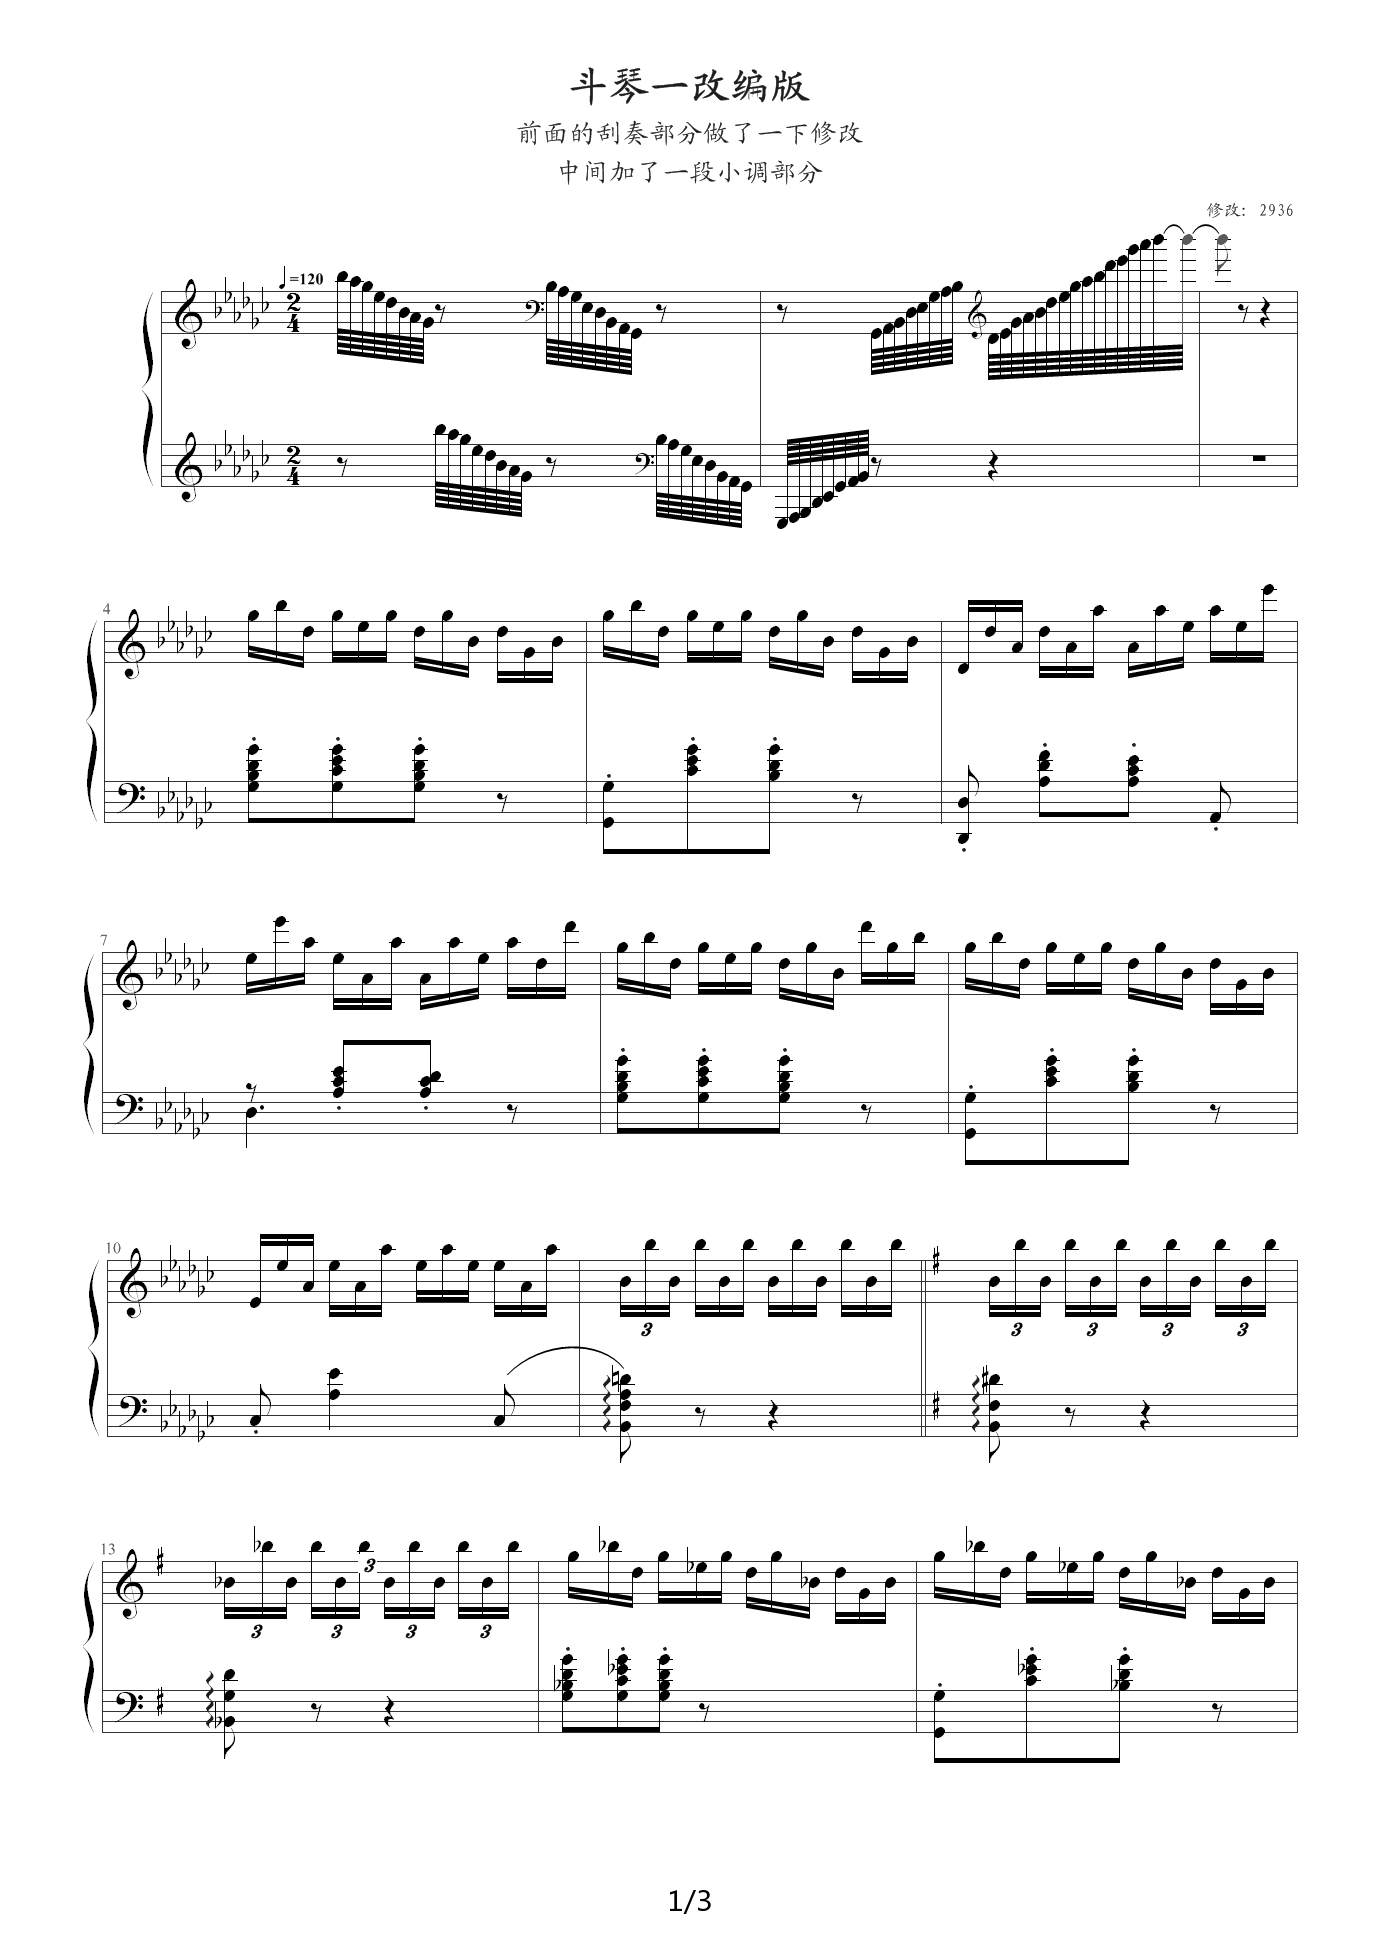 斗琴钢琴谱|斗琴最新钢琴谱|斗琴钢琴谱下载